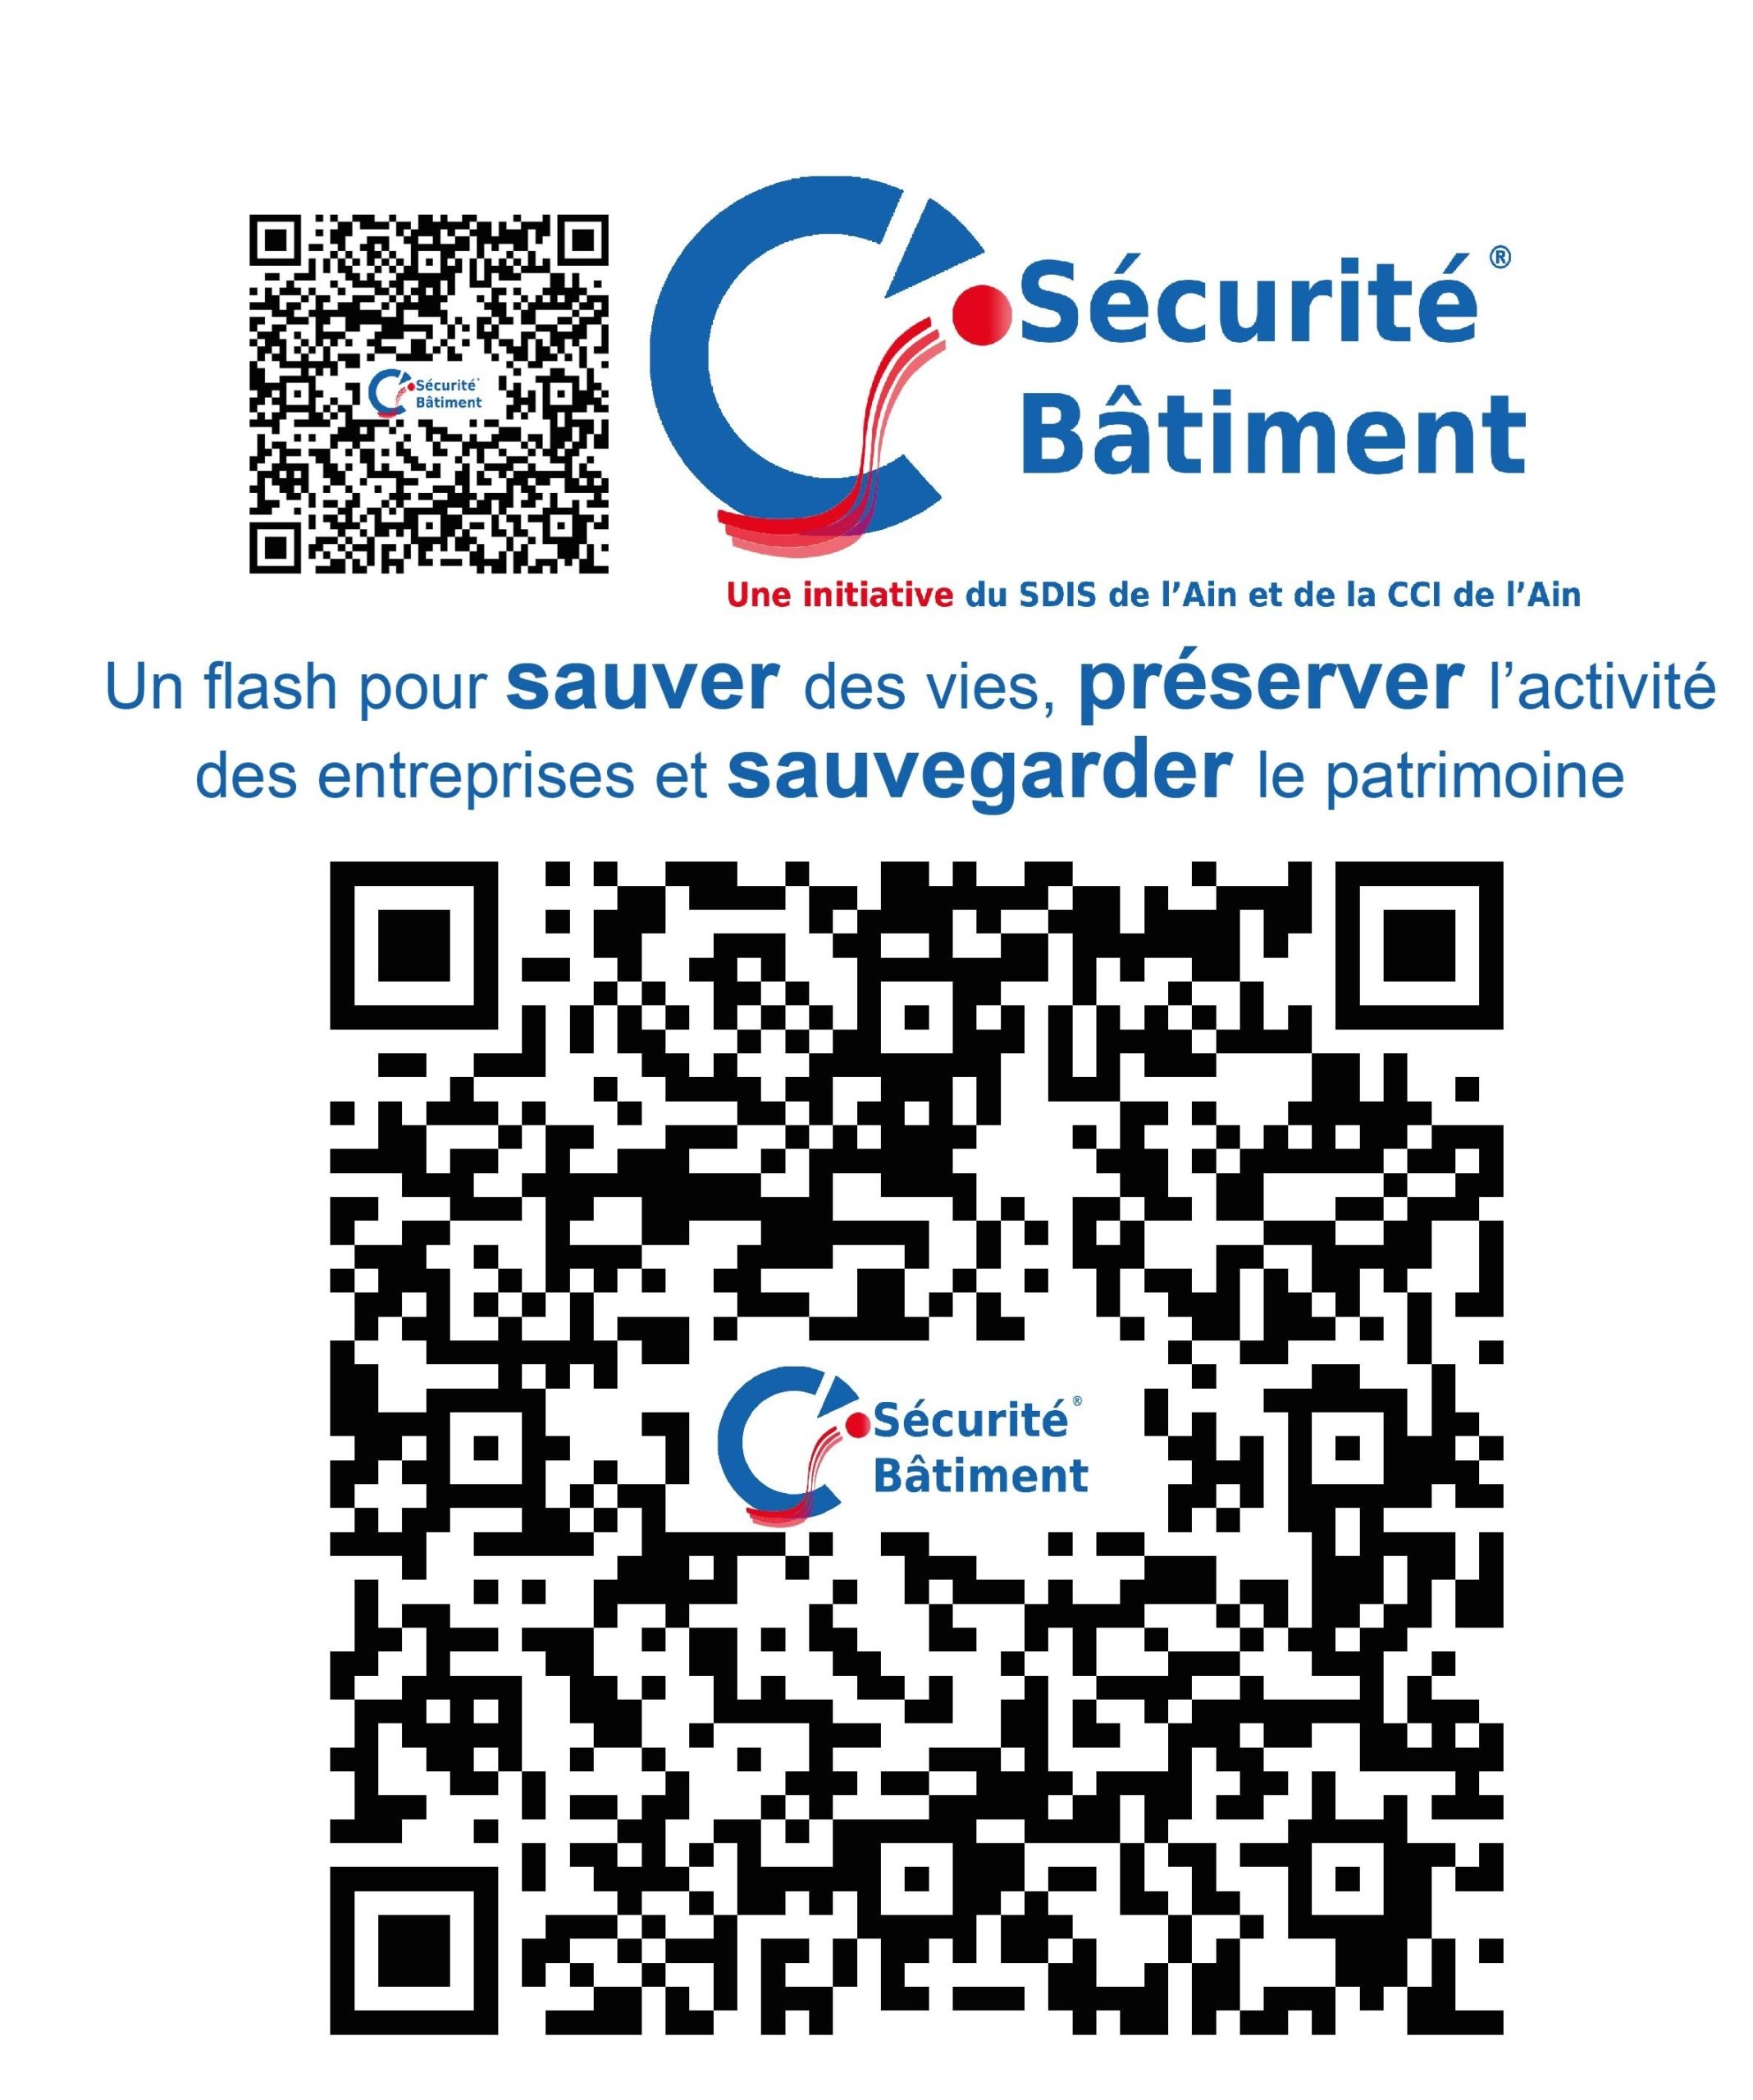 QR Code Sécurité Bâtiment à scanner pour accéder à l'application.